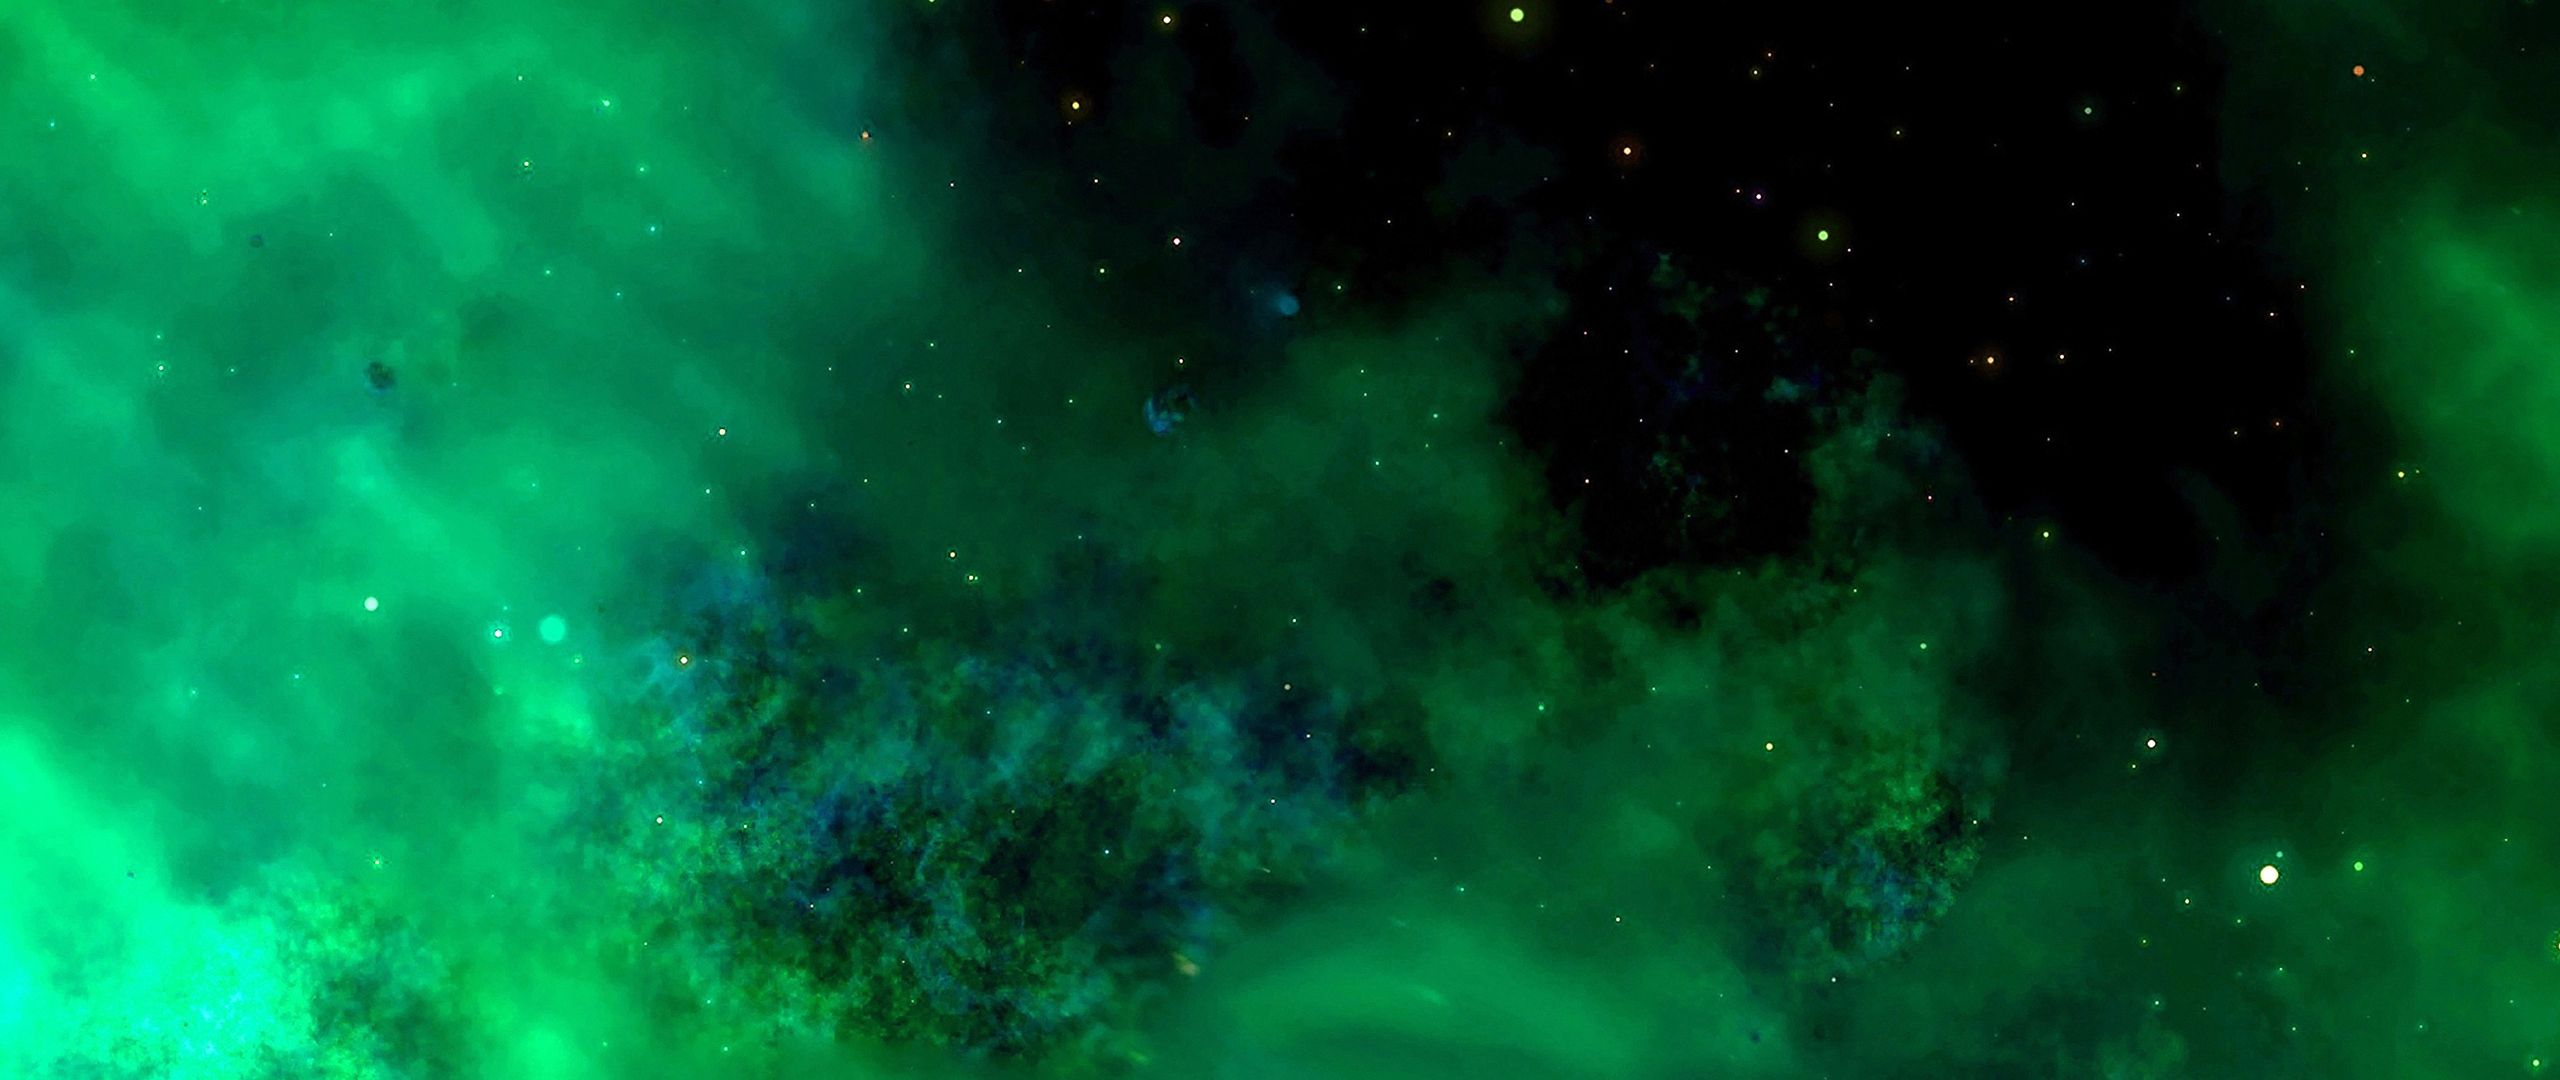 Green Galaxy: Kính mời quý vị hâm mộ thế giới vũ trụ, một tuyệt phẩm đầy màu sắc của thiên nhiên - Green Galaxy. Chúng tôi tự hào giới thiệu bức ảnh đẹp nhất về không gian xanh này, nơi sự sống và sự tĩnh lặng gặp nhau. Hãy chiêm ngưỡng những đường cong mềm mại, màu xanh ngát tràn ngập tất cả các góc độ của bức tranh.